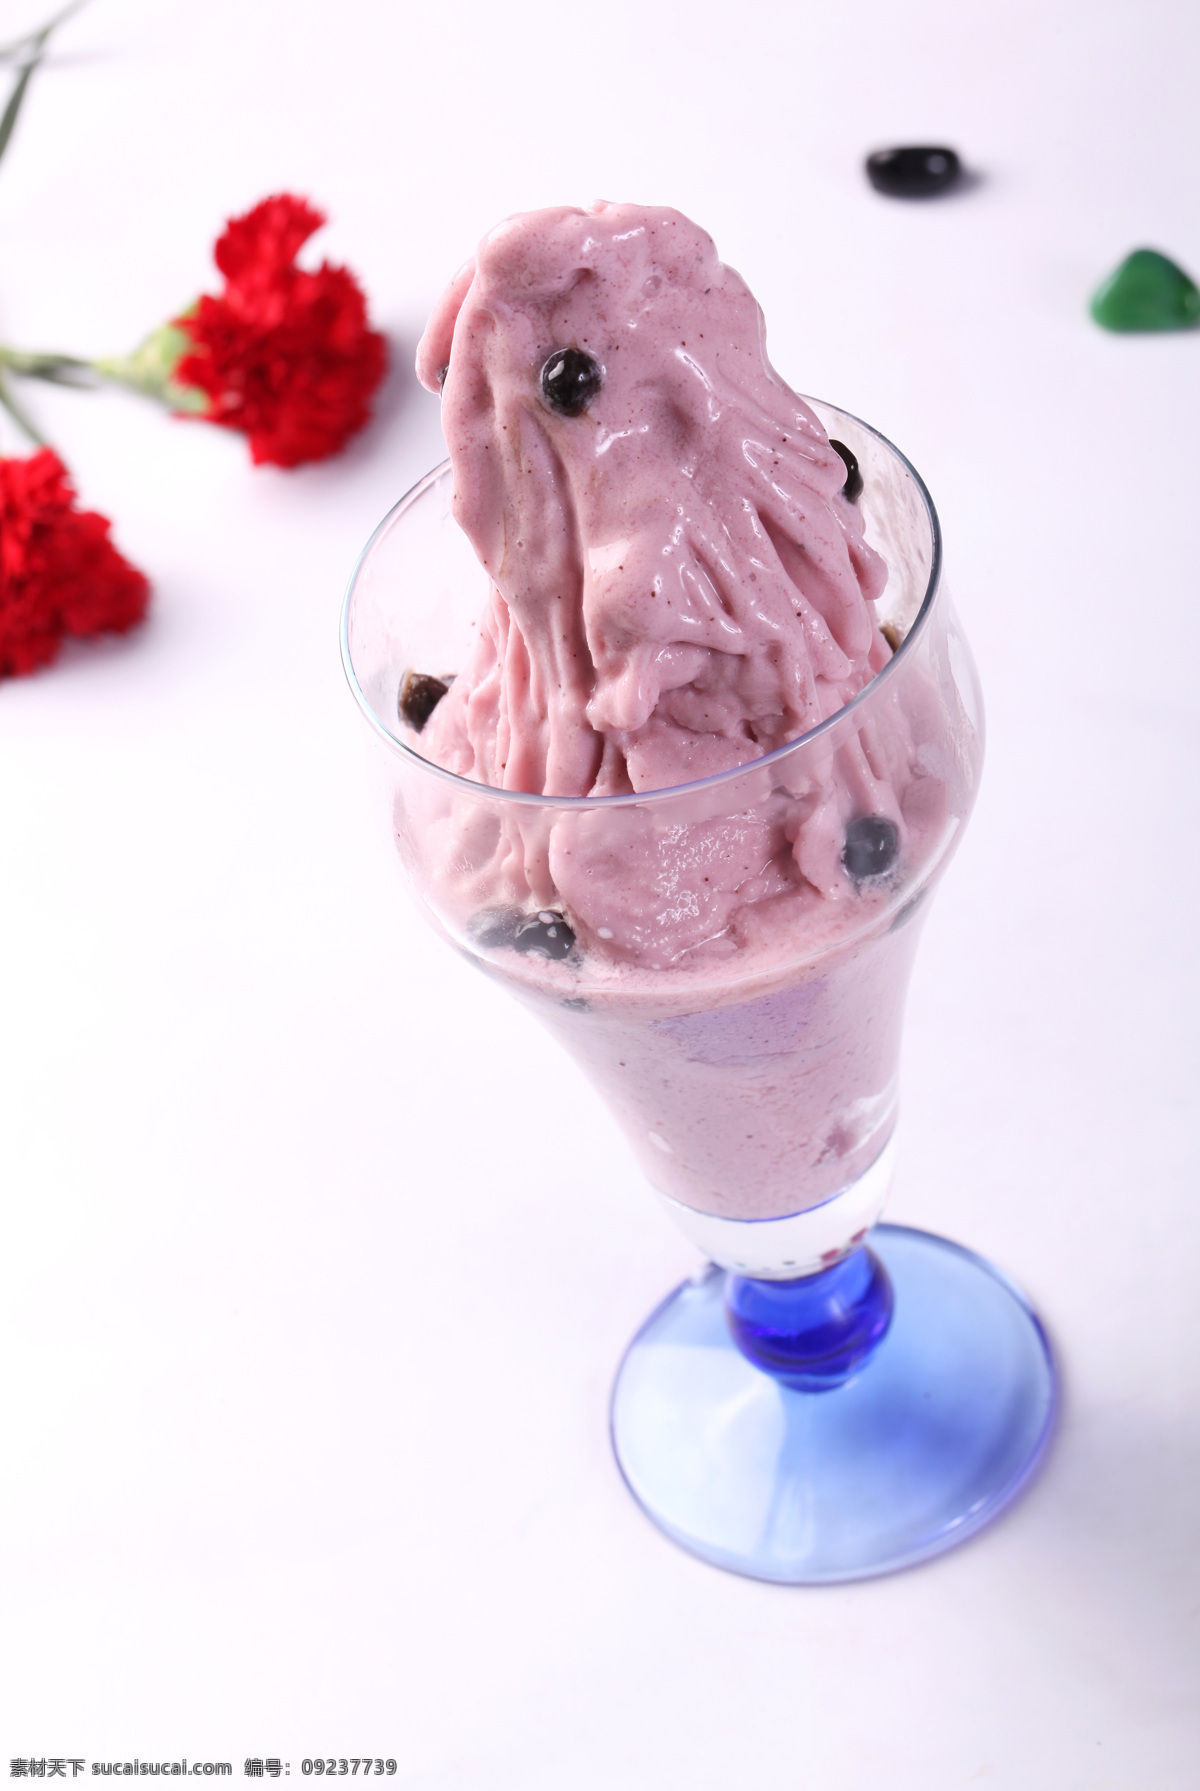 蓝莓沙冰 草莓冰沙 水果冰沙 蓝莓冰沙 蓝莓奶昔 饮品系 餐饮美食 饮料酒水